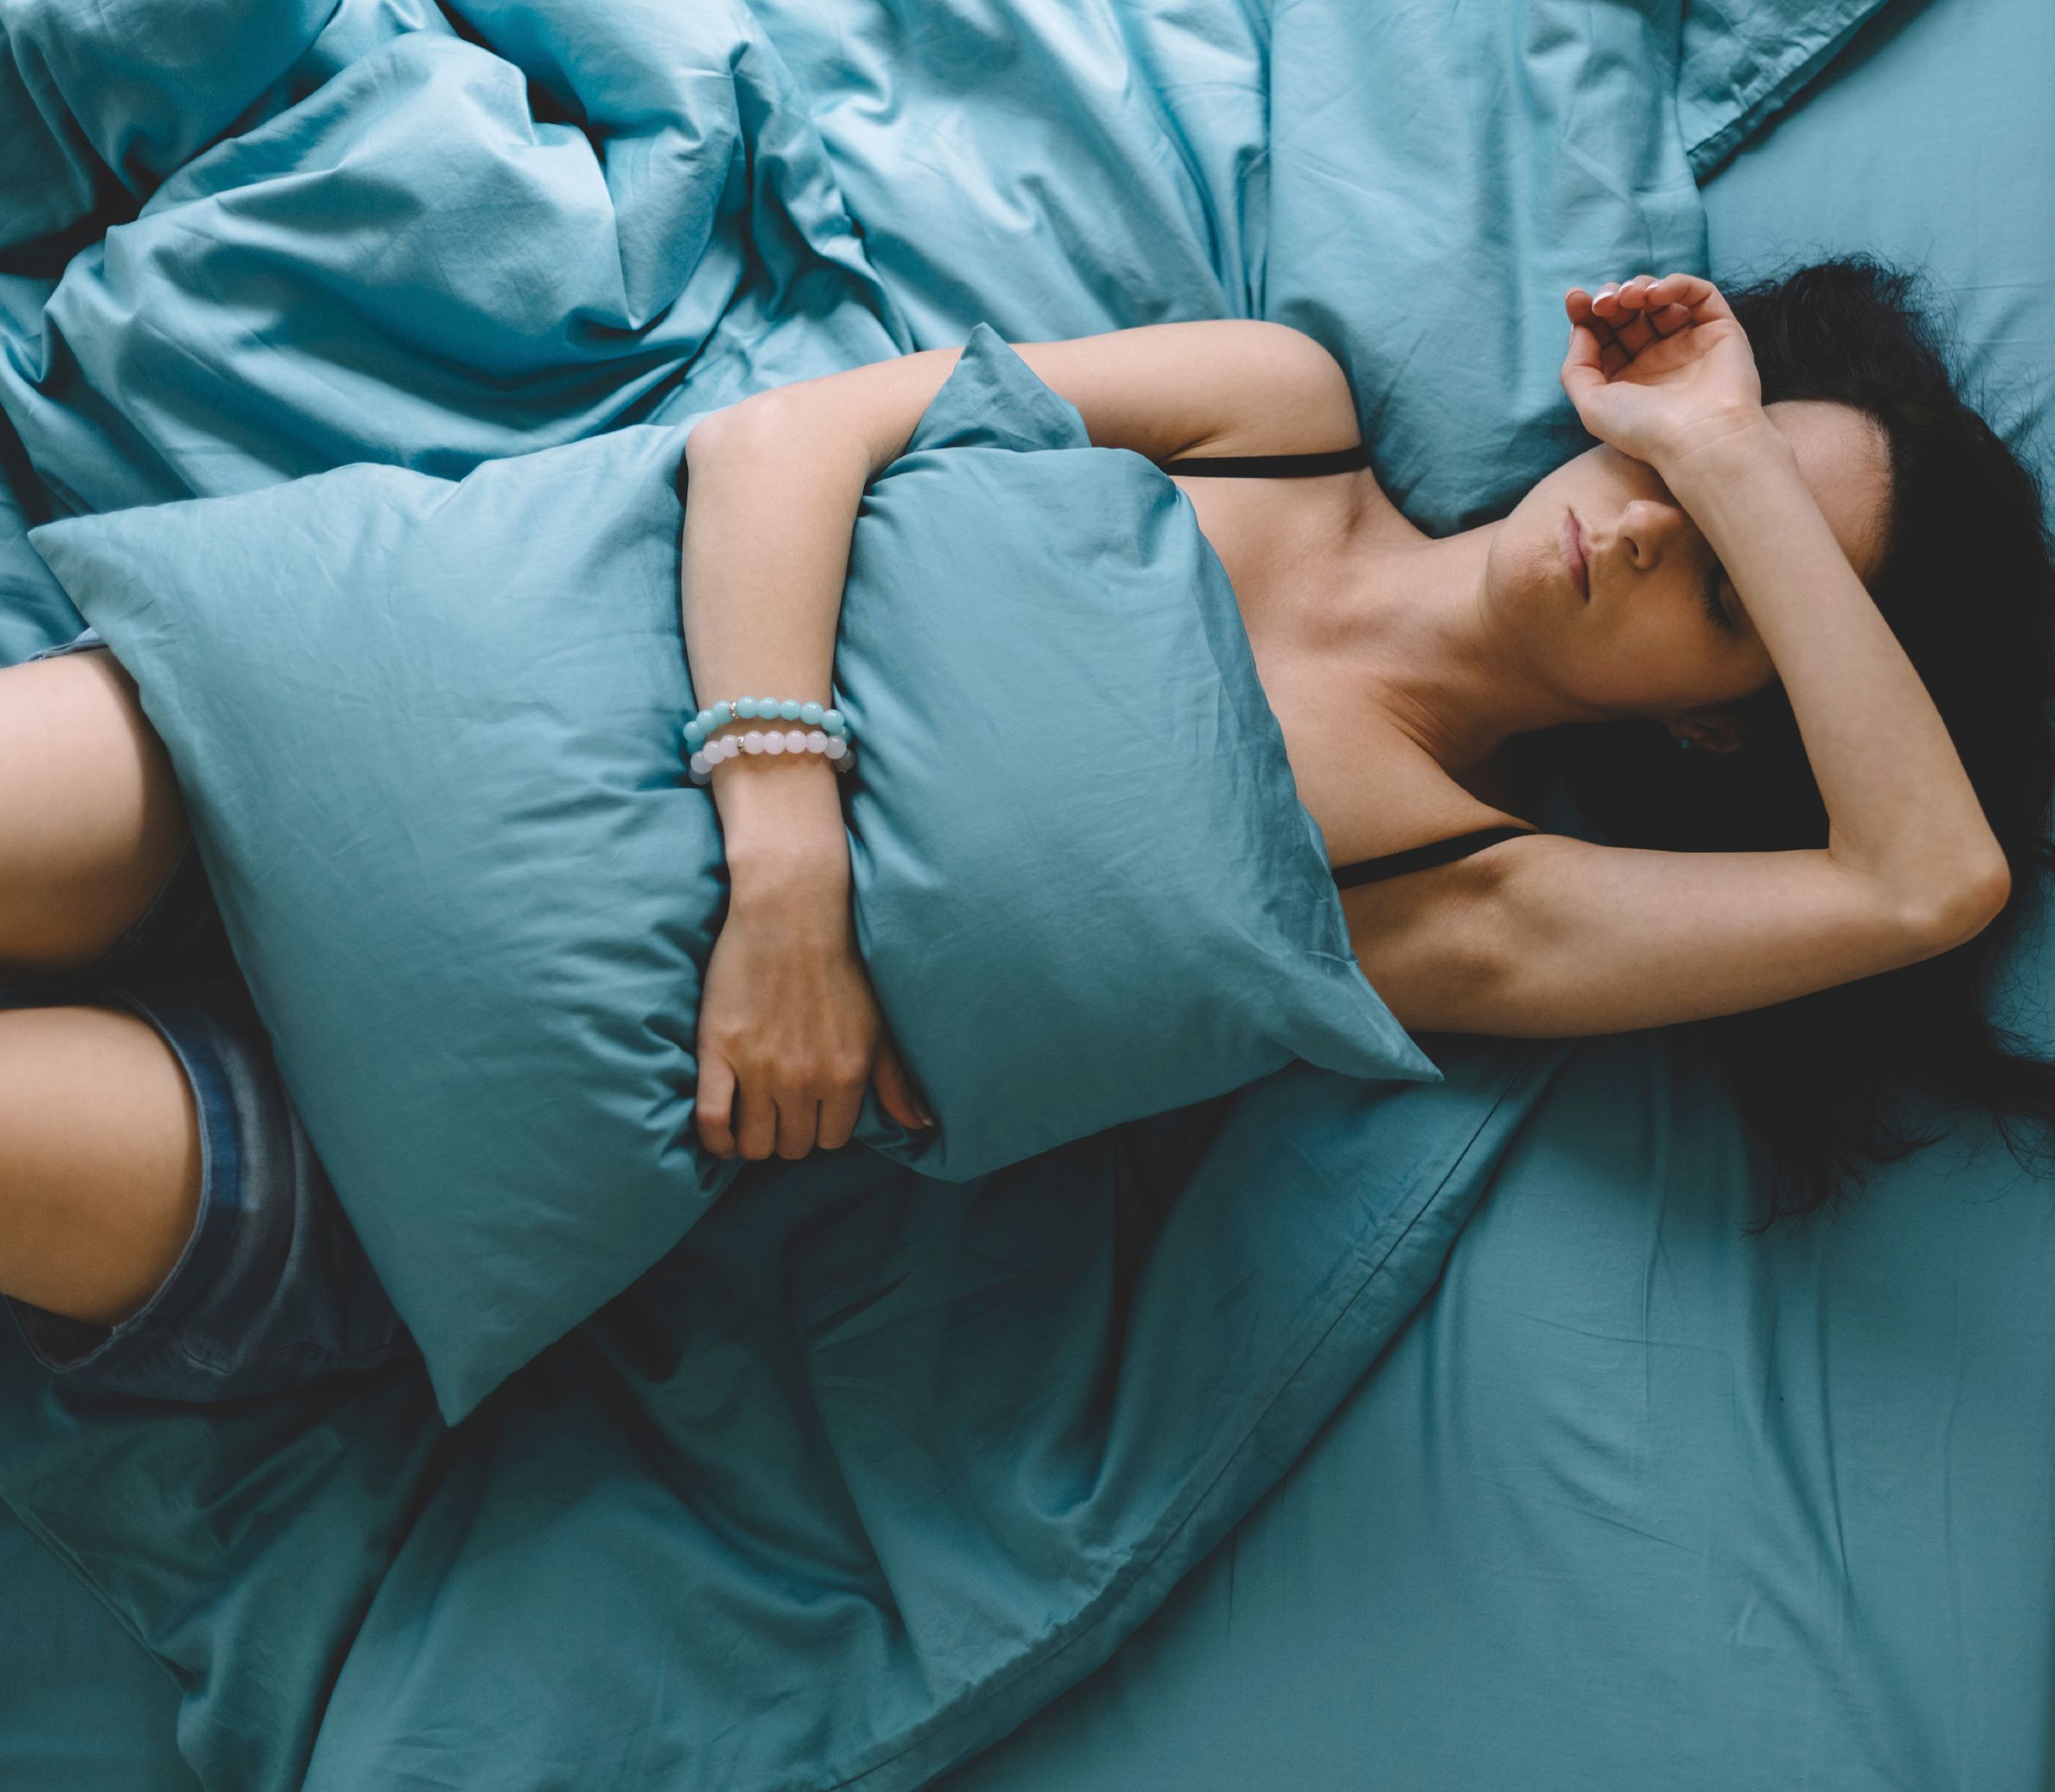 Weibliche Person liegt mit Kater-Beschwerden im Bett